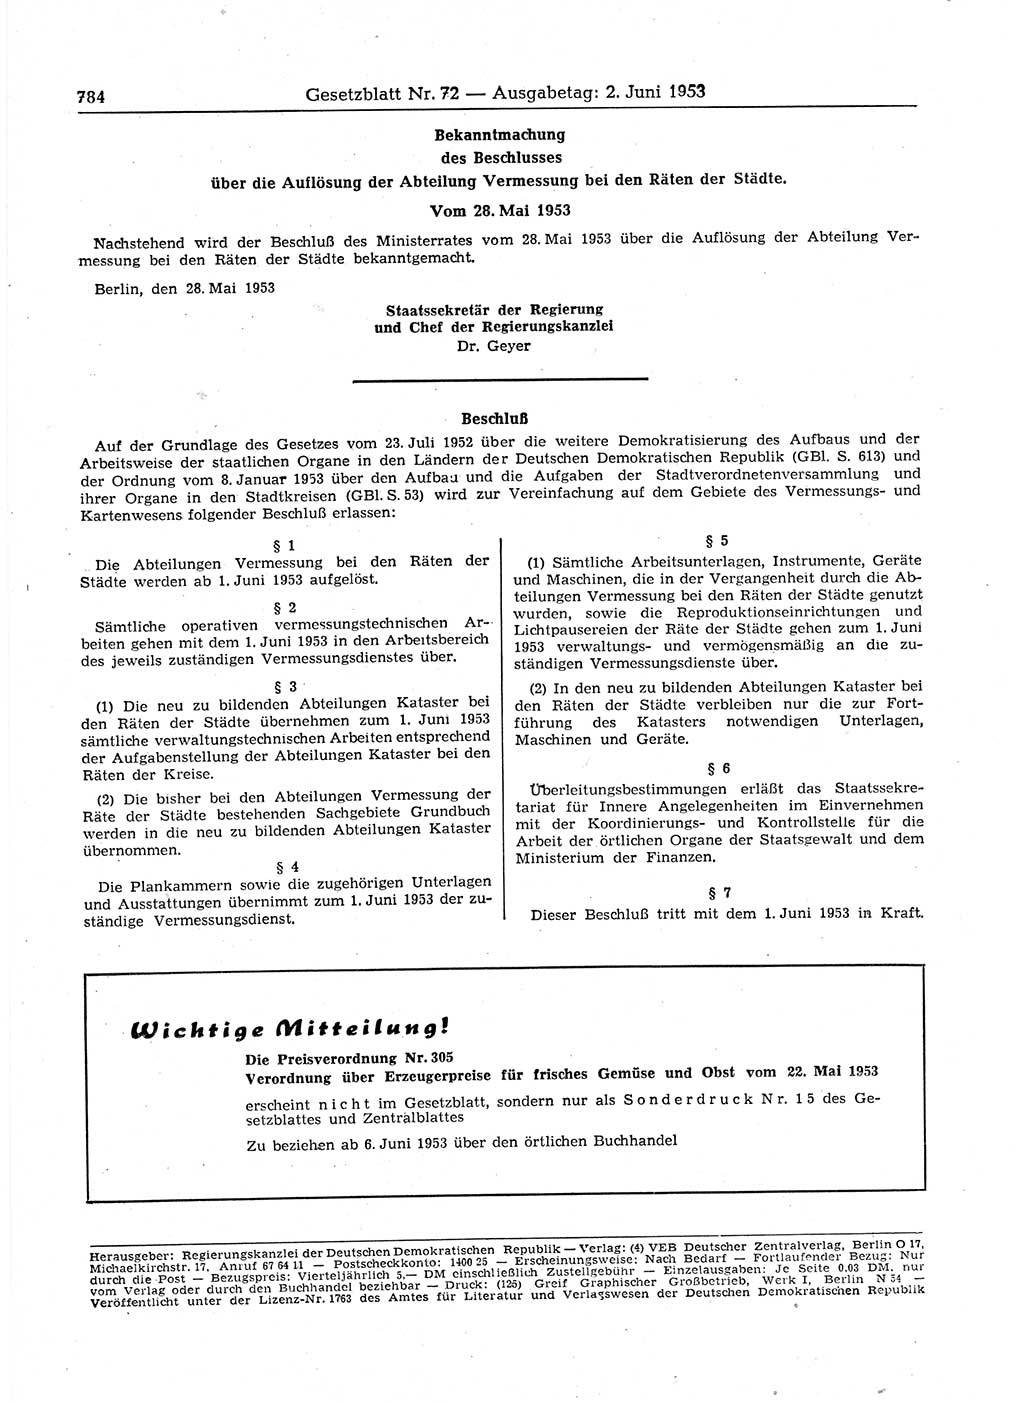 Gesetzblatt (GBl.) der Deutschen Demokratischen Republik (DDR) 1953, Seite 784 (GBl. DDR 1953, S. 784)